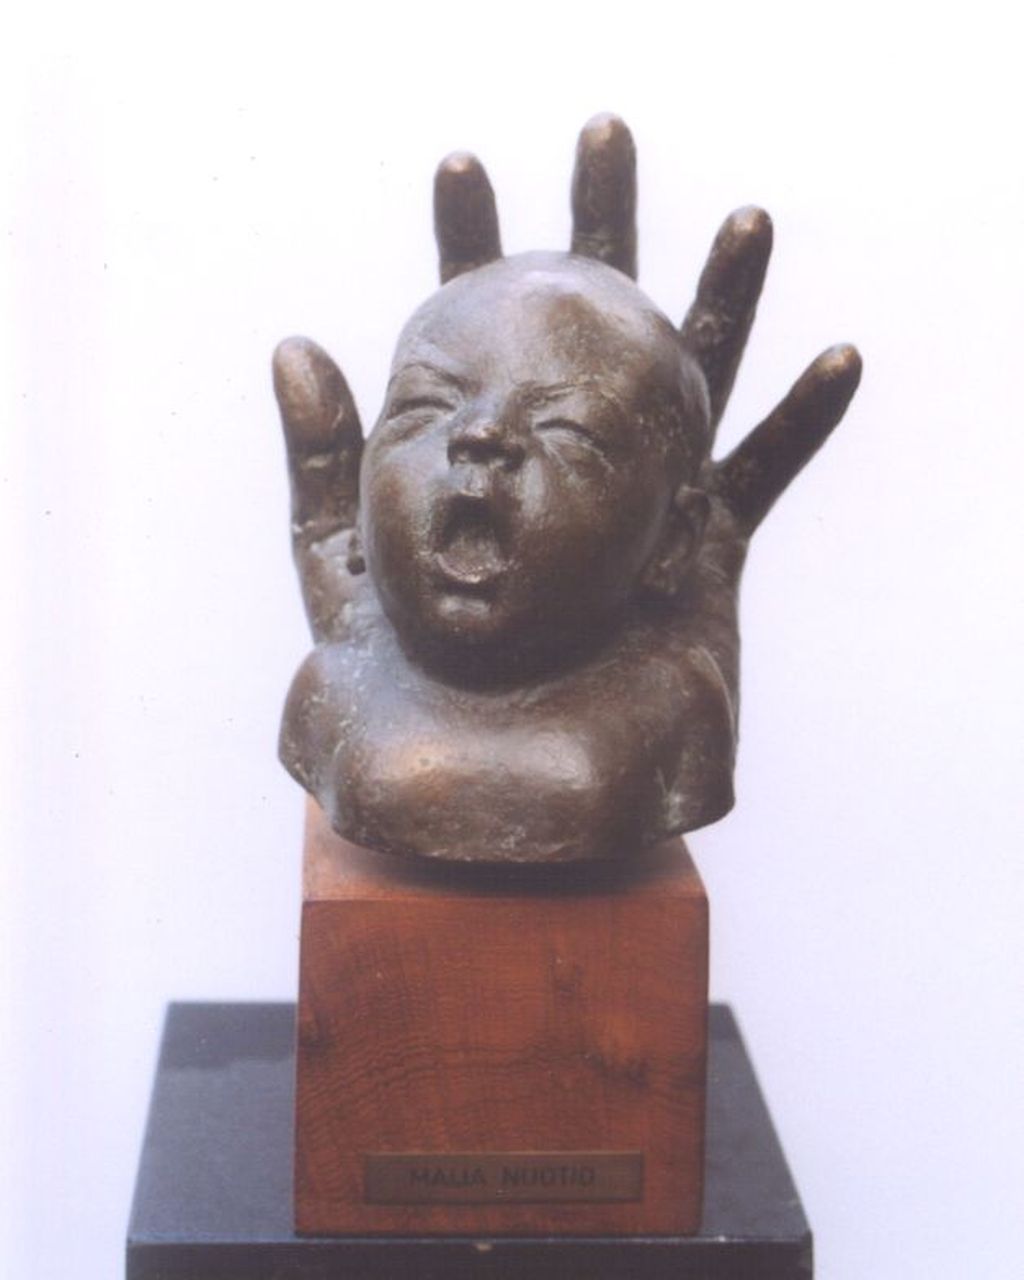 Maija Nuotio | Babyhoofdje gevat in een hand, Bronze, 21,5 x 18,5 cm, gesigneerd op zijkant hand und gedateerd '74